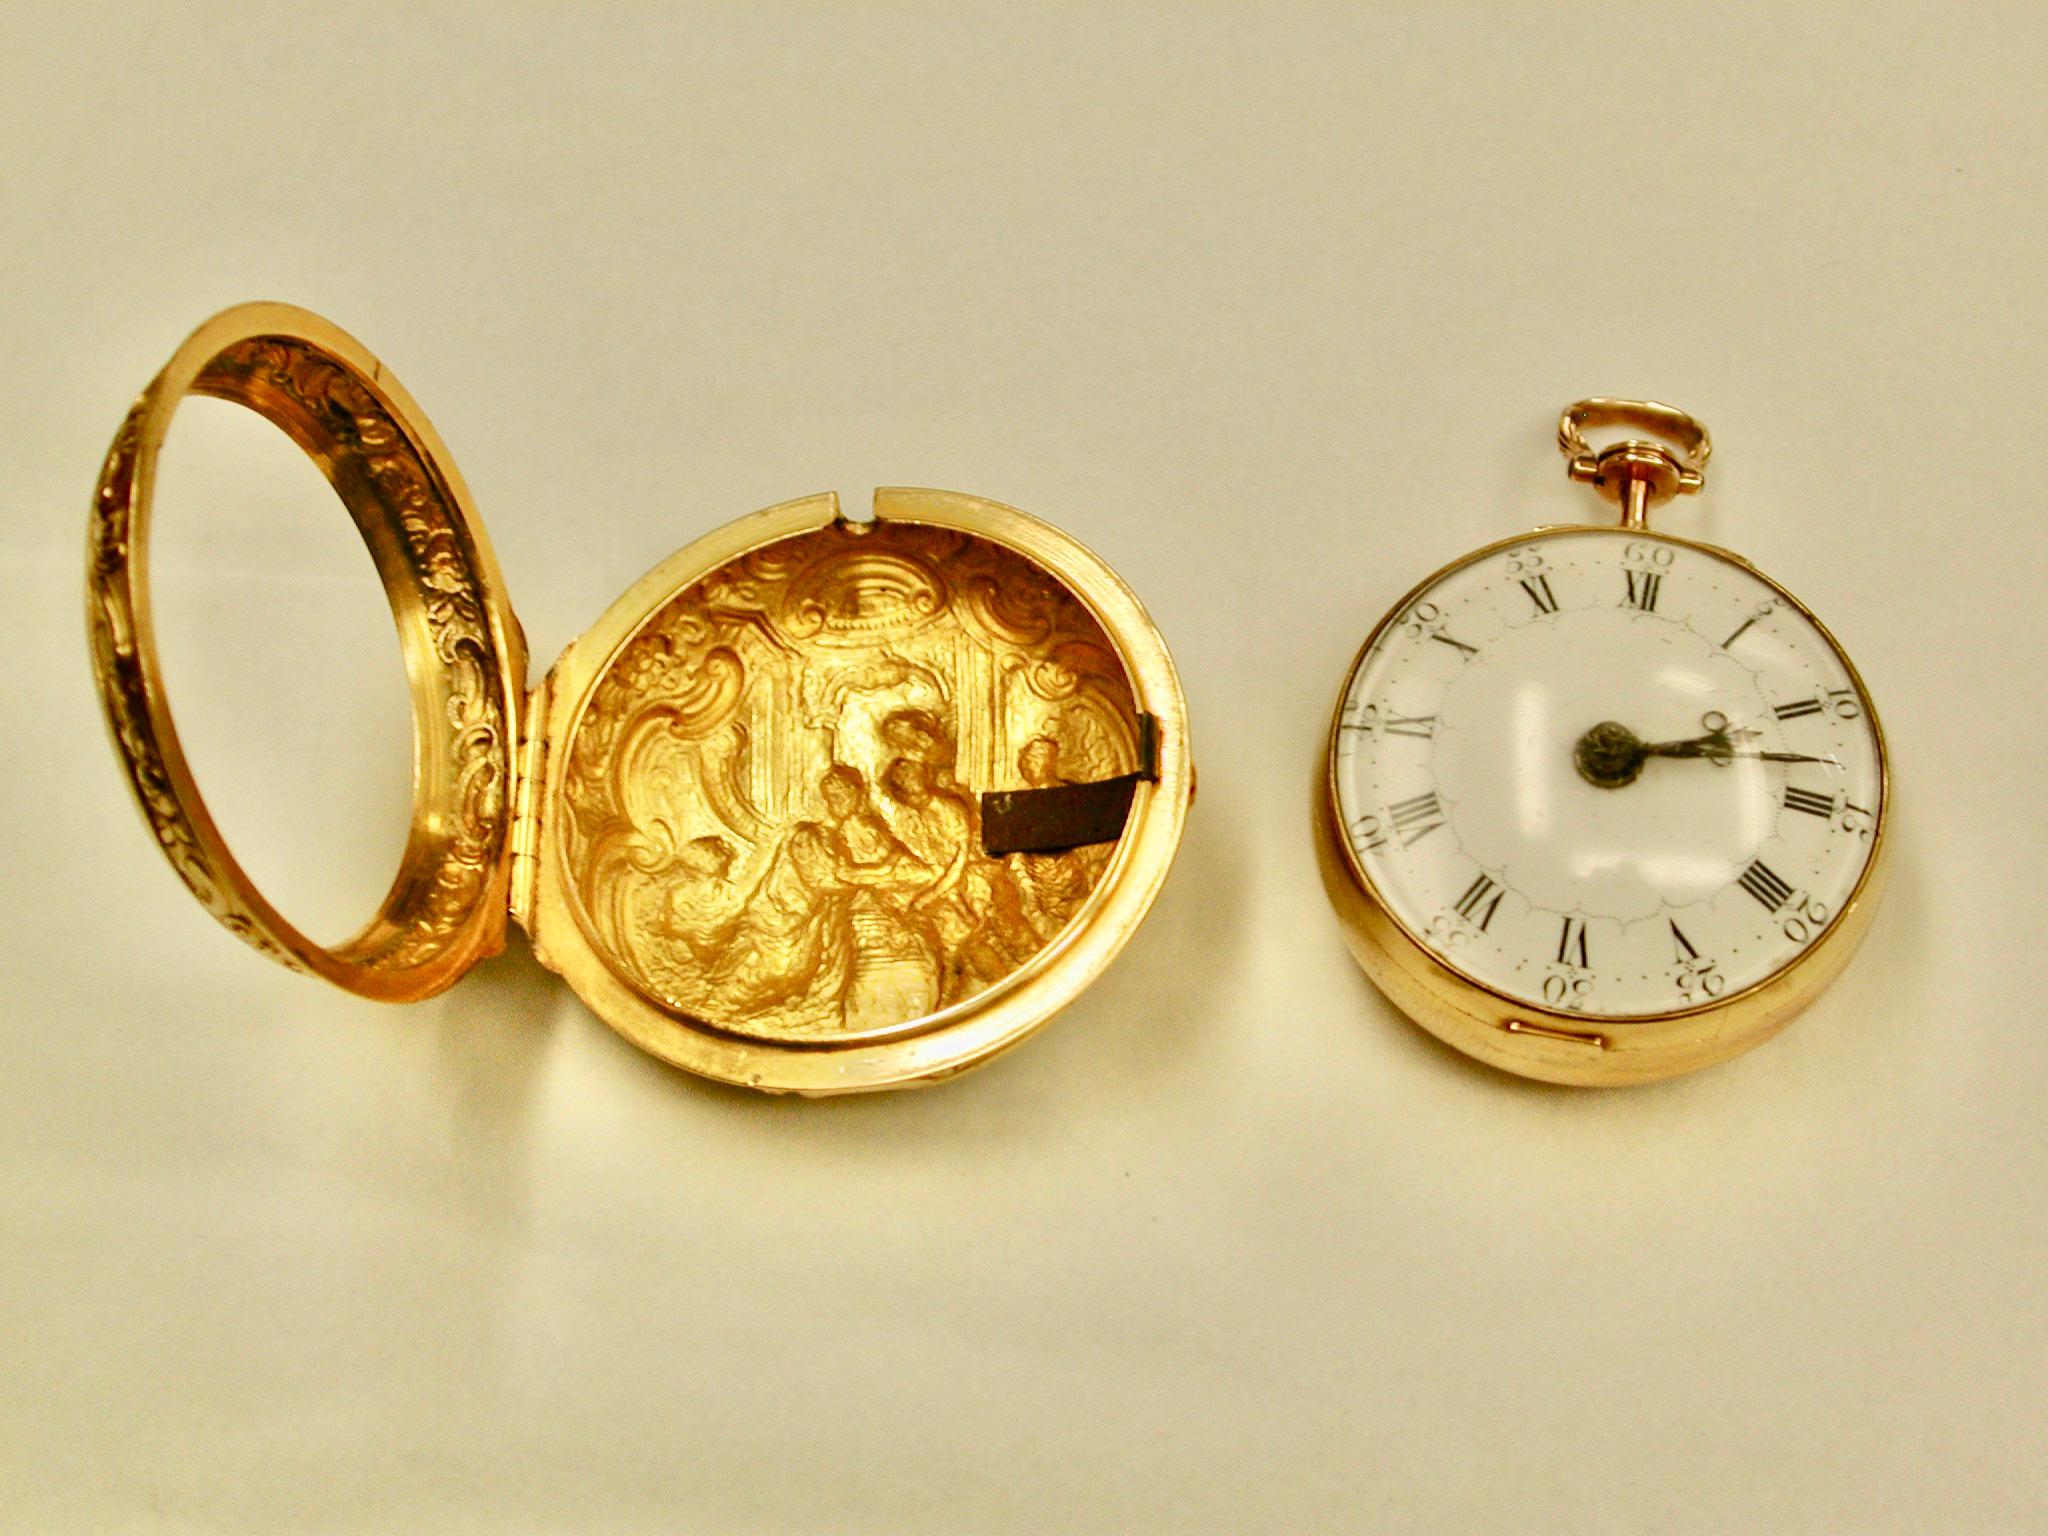 22 Karat Gold Repousee Pair-Cased Pocket Watch Maker Thomas Rea 1769
Das Uhrwerk wurde in Walton-On-Trent von Thomas Rea hergestellt, und das schöne Paargehäuse stammt von I W of London.
Diese Uhr hat eine Spindelhemmung mit einem von Hand